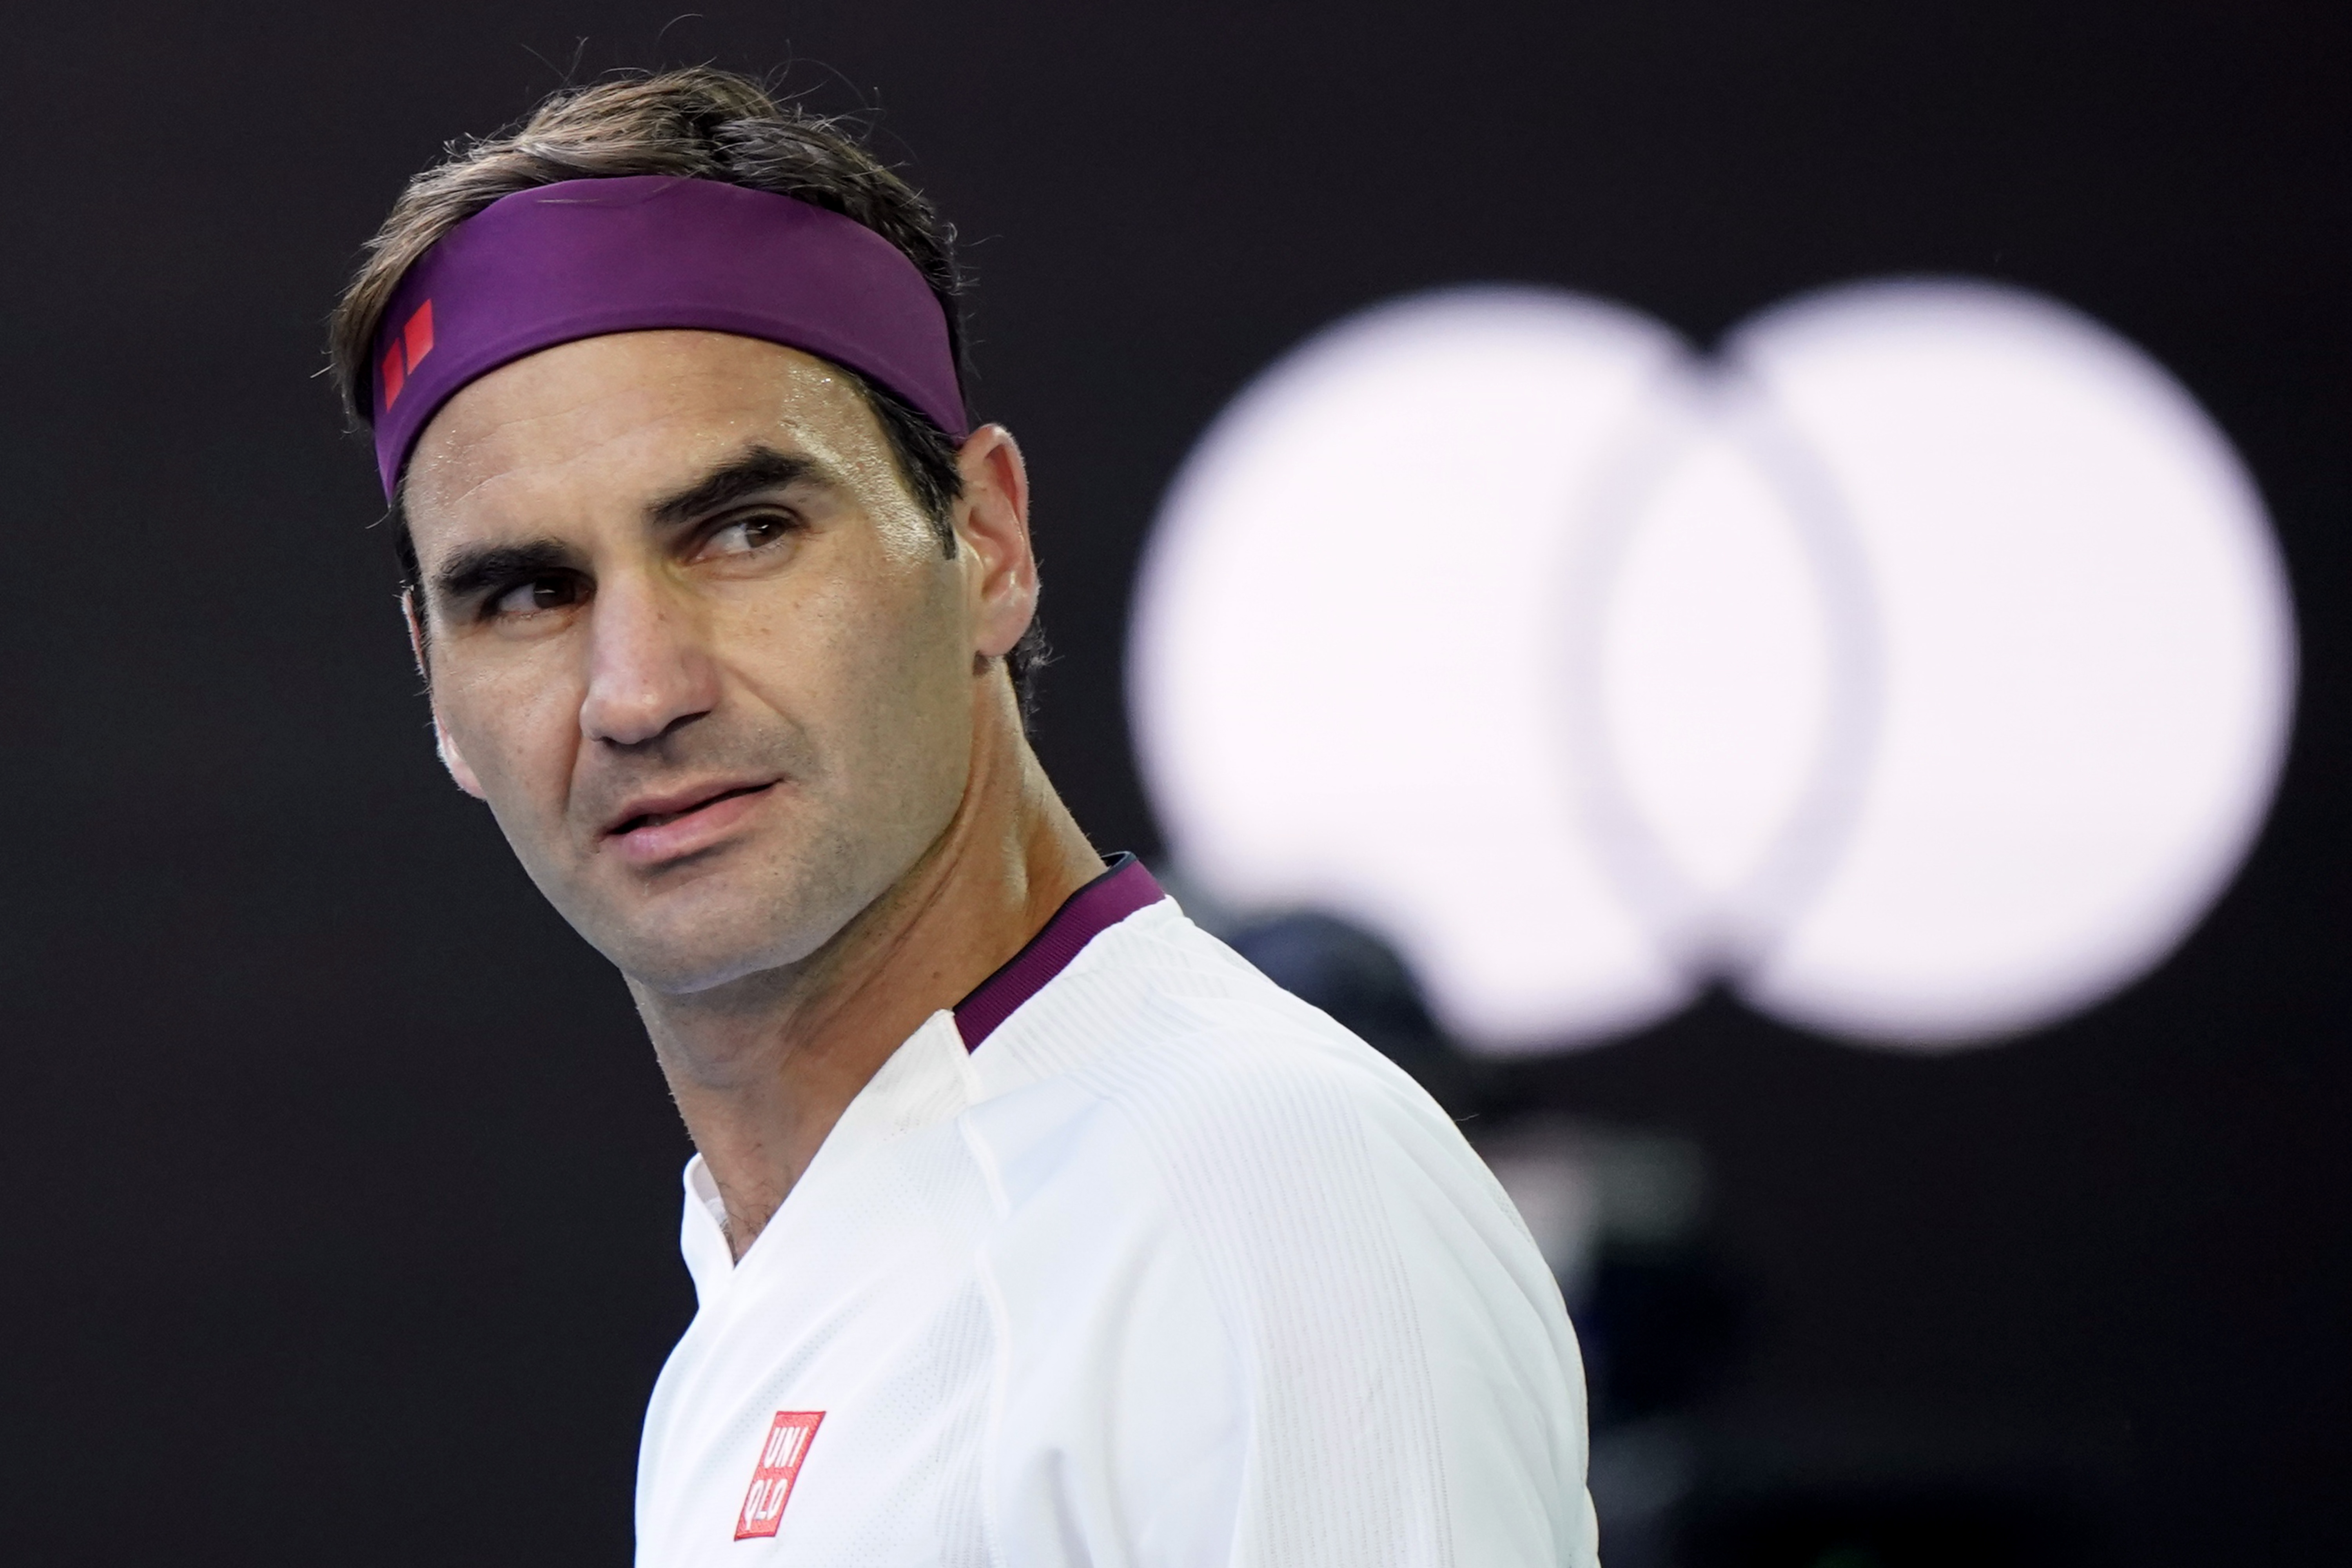 Roger Federer levantó siete match point para clasificar a las semifinales del Abierto de Australia: “Hoy no merecía la victoria”